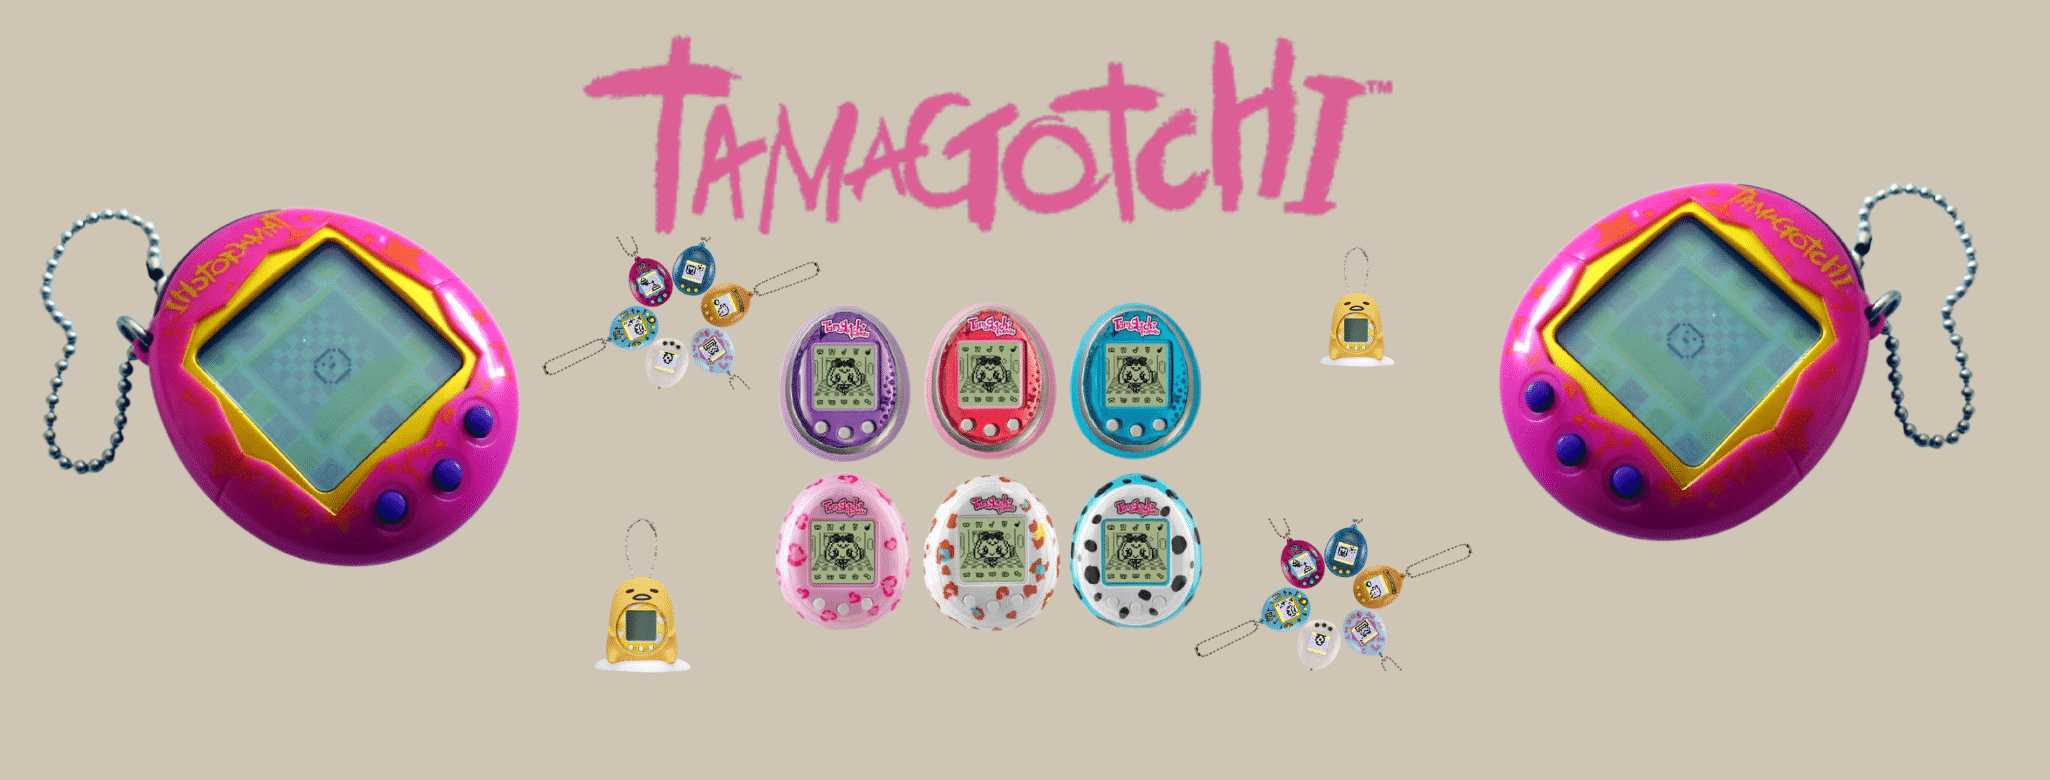 Tamagotchi Original pour une NOUVELLE GÉNÉRATION ! – Tamagotchi Pix